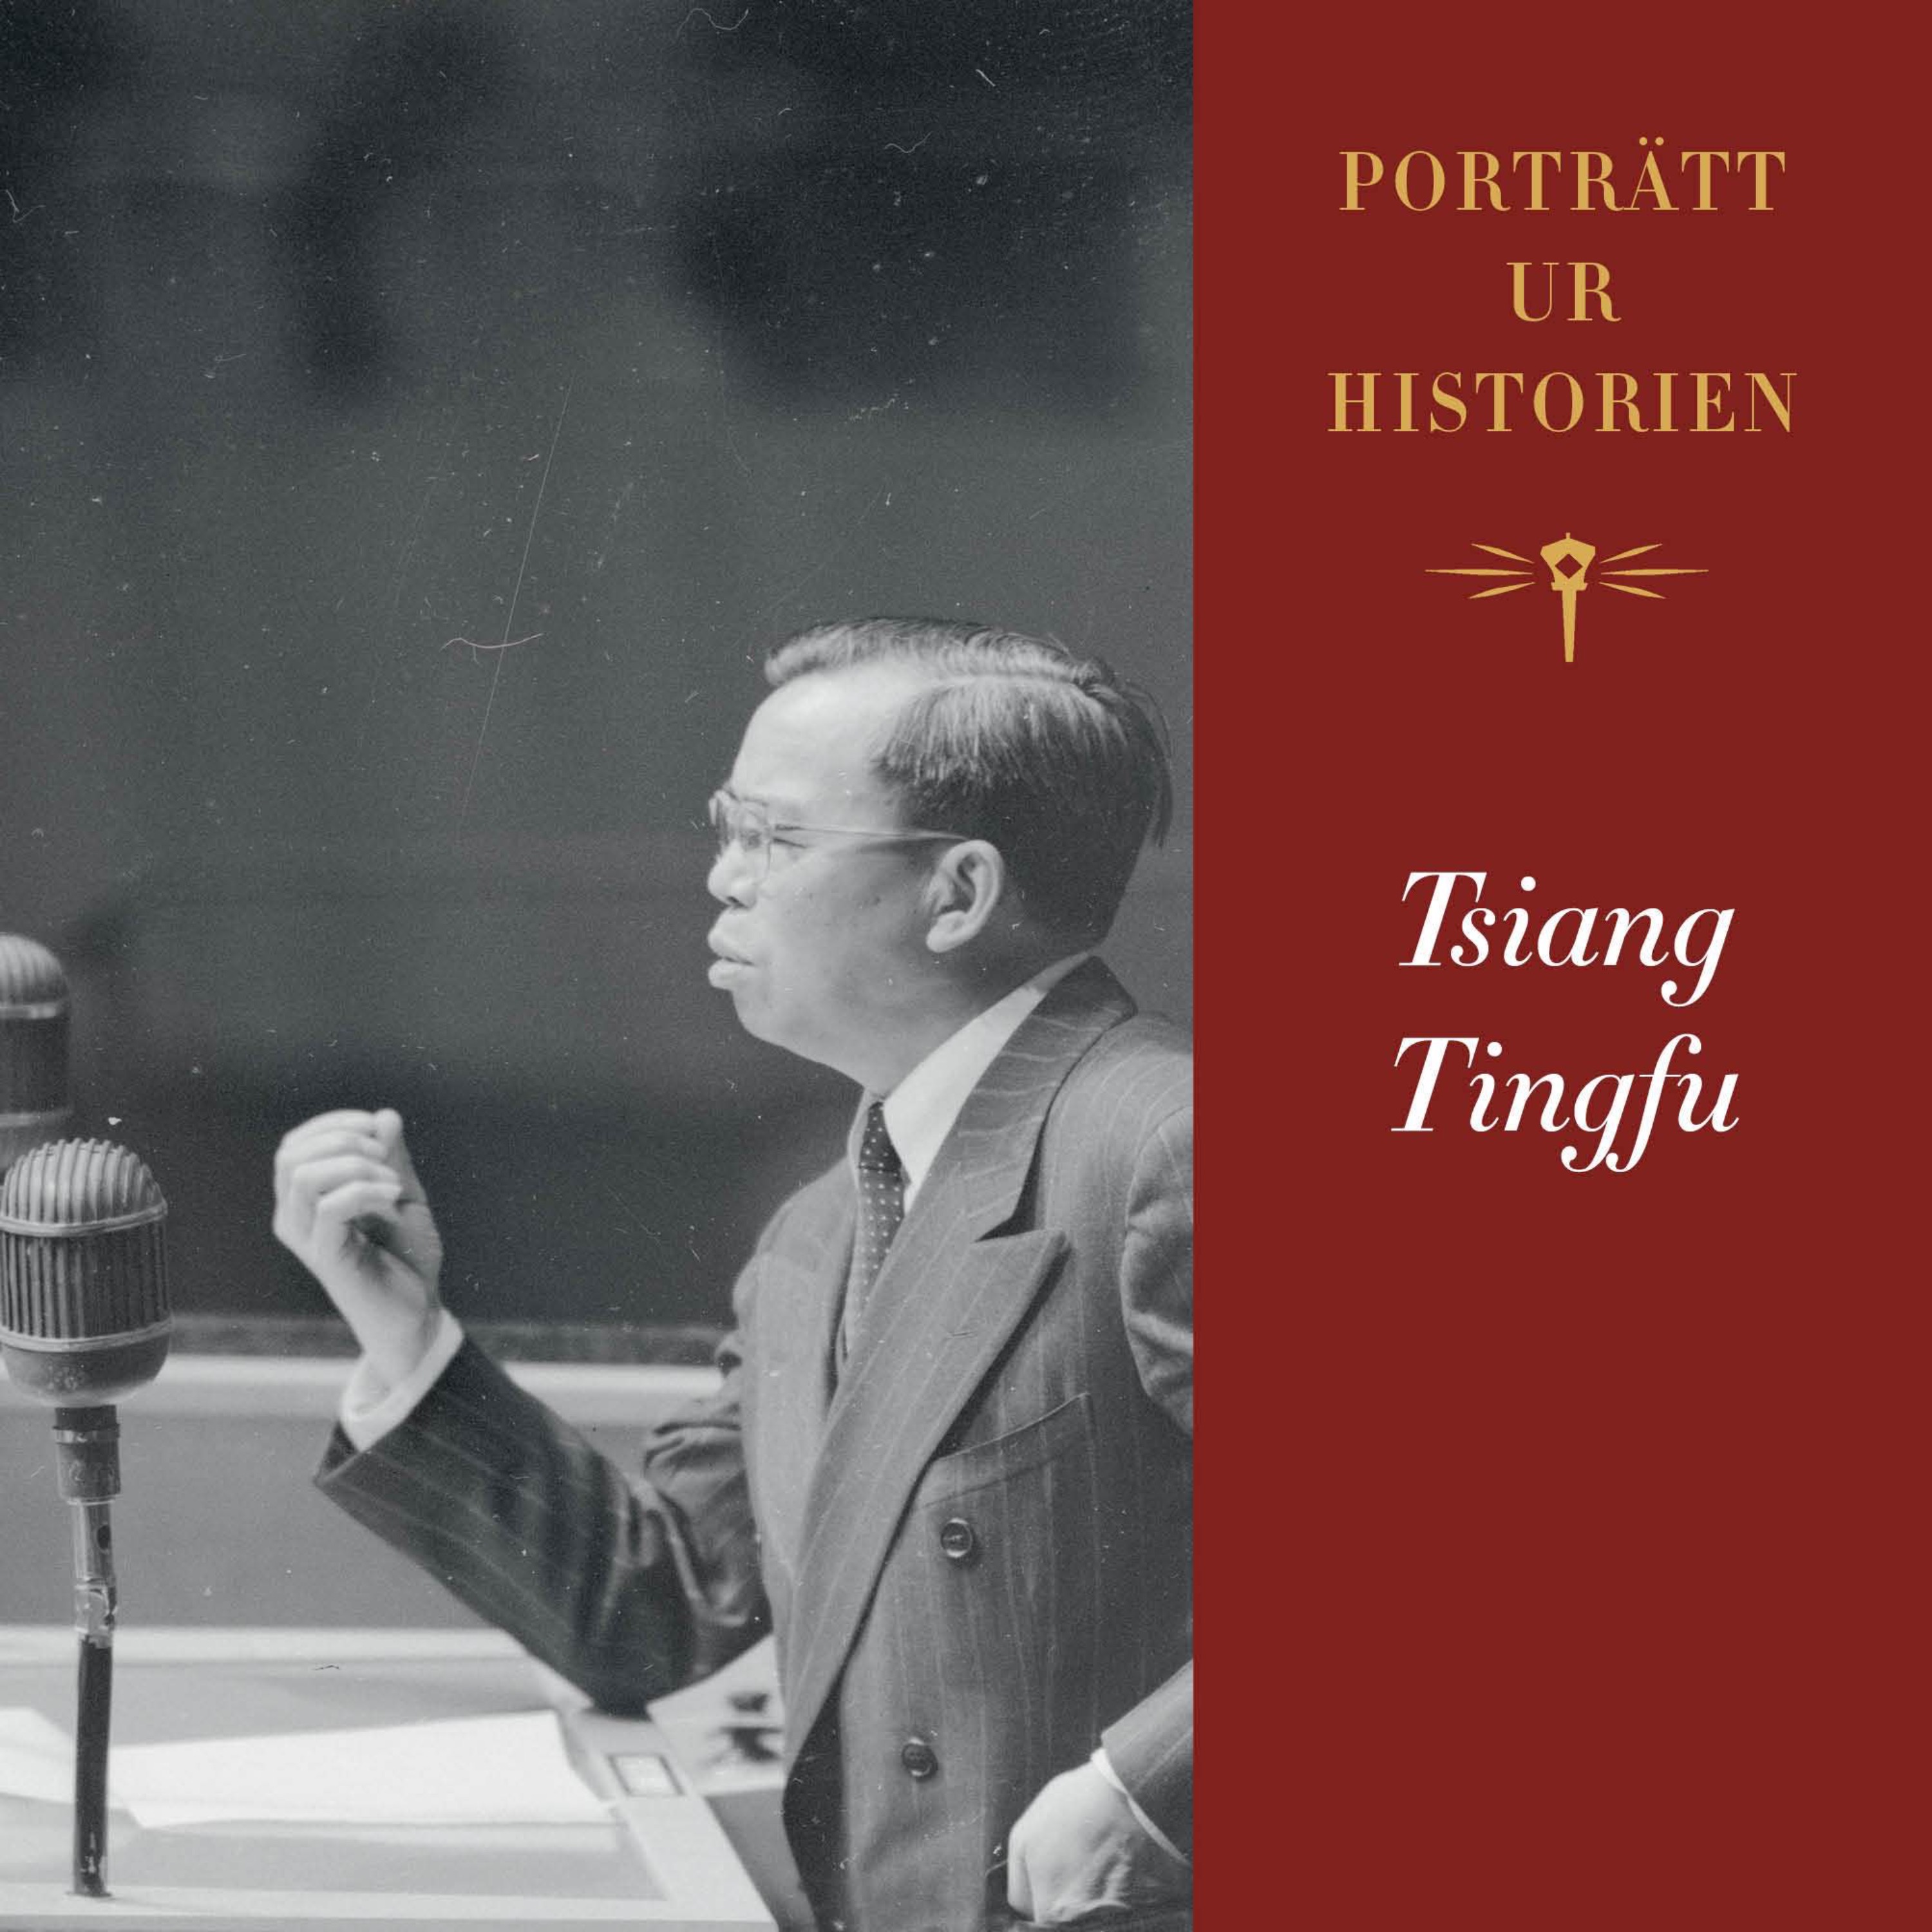 Porträtt ur historien: Tsiang Tingfu